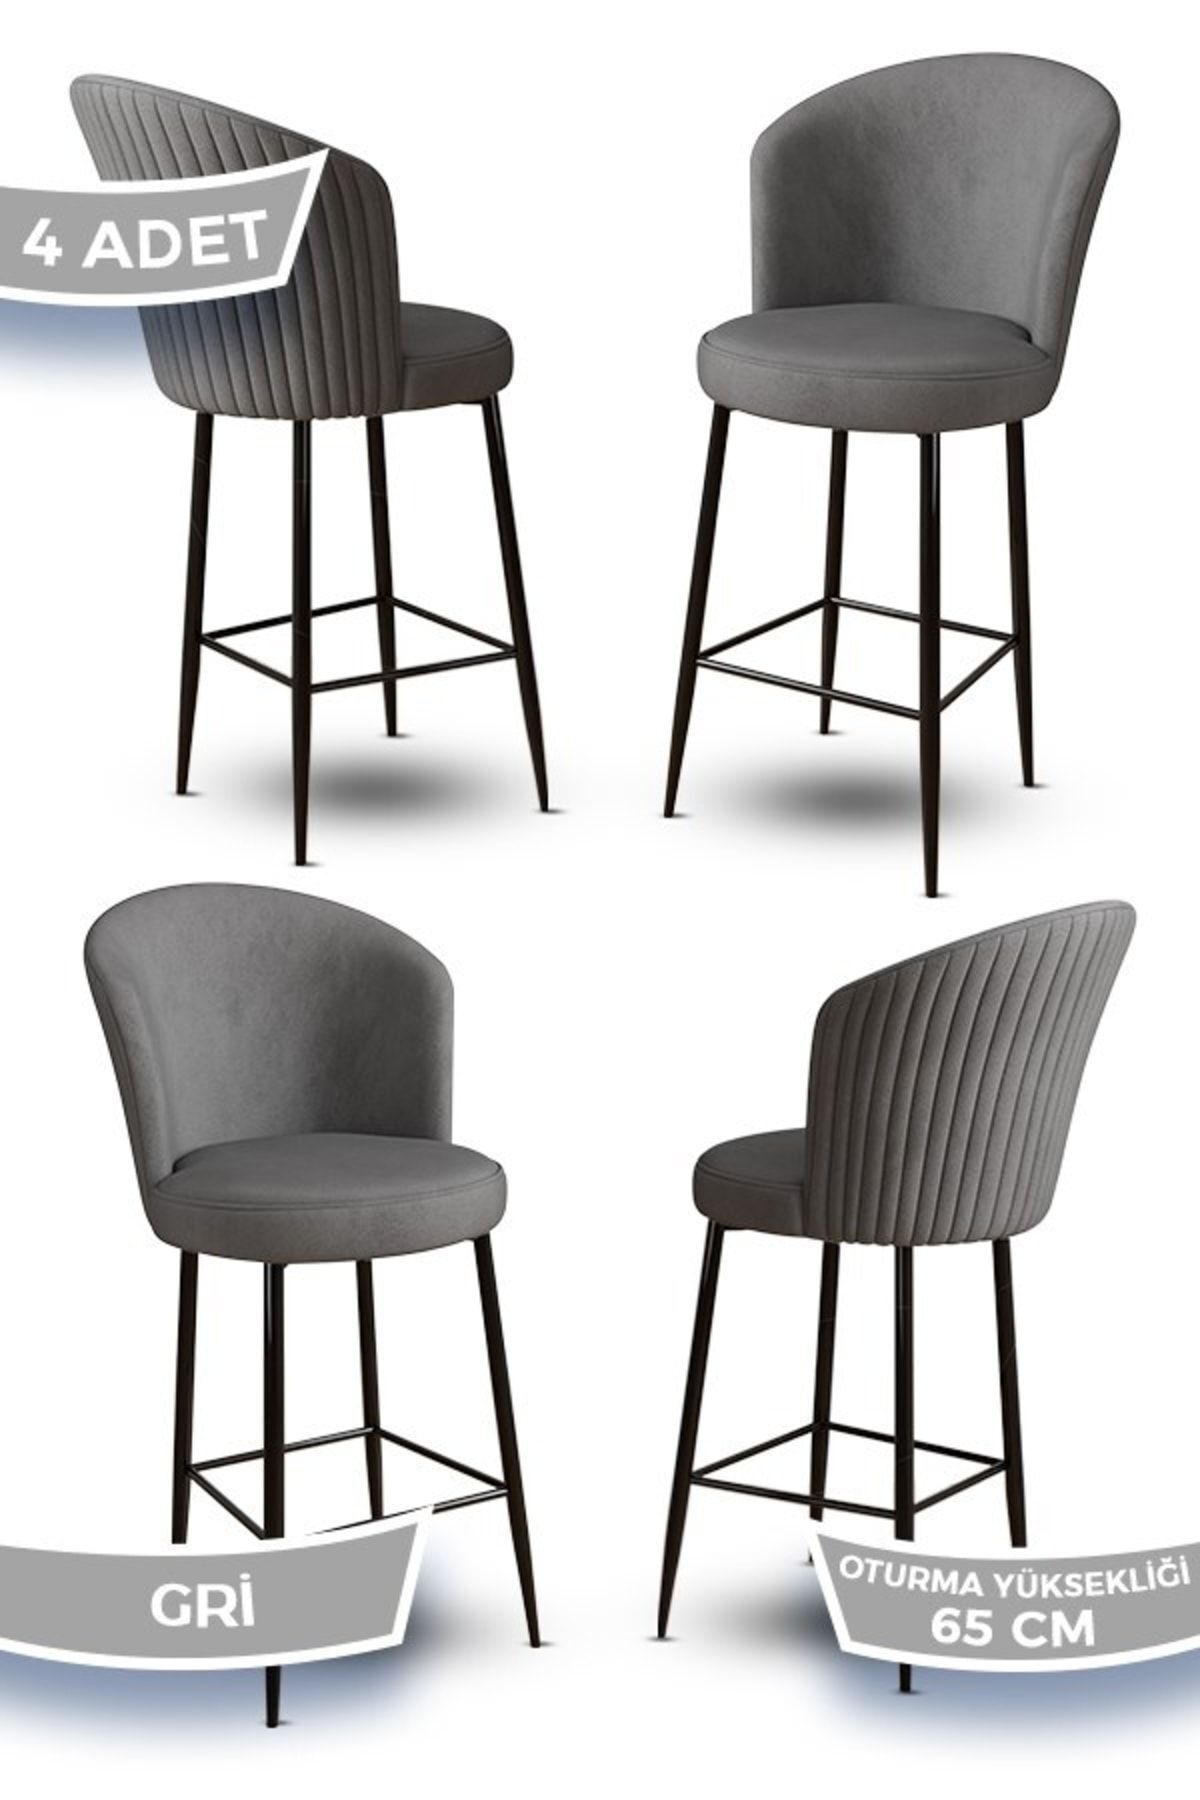 Canisa Alte Serisi 4 Gri Sandalye 65 Cm Ada Mutfak Bar Sandalyesi Babyface Kumaş Siyah Metal Ayaklı